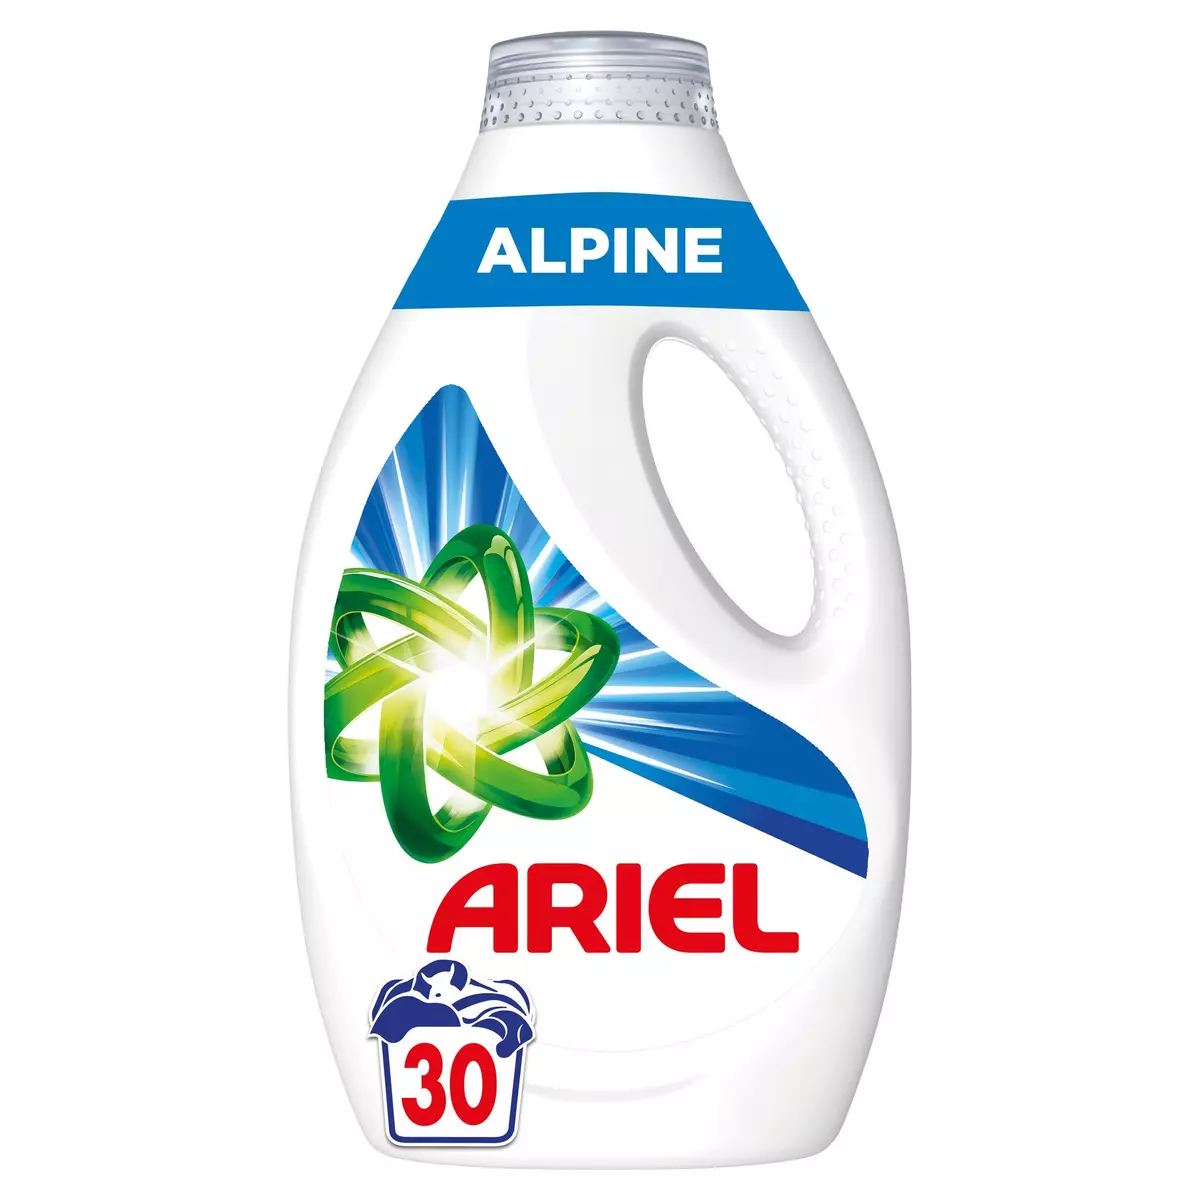 ARIEL Liquide détergent Alpine 30 lavages 1,35L